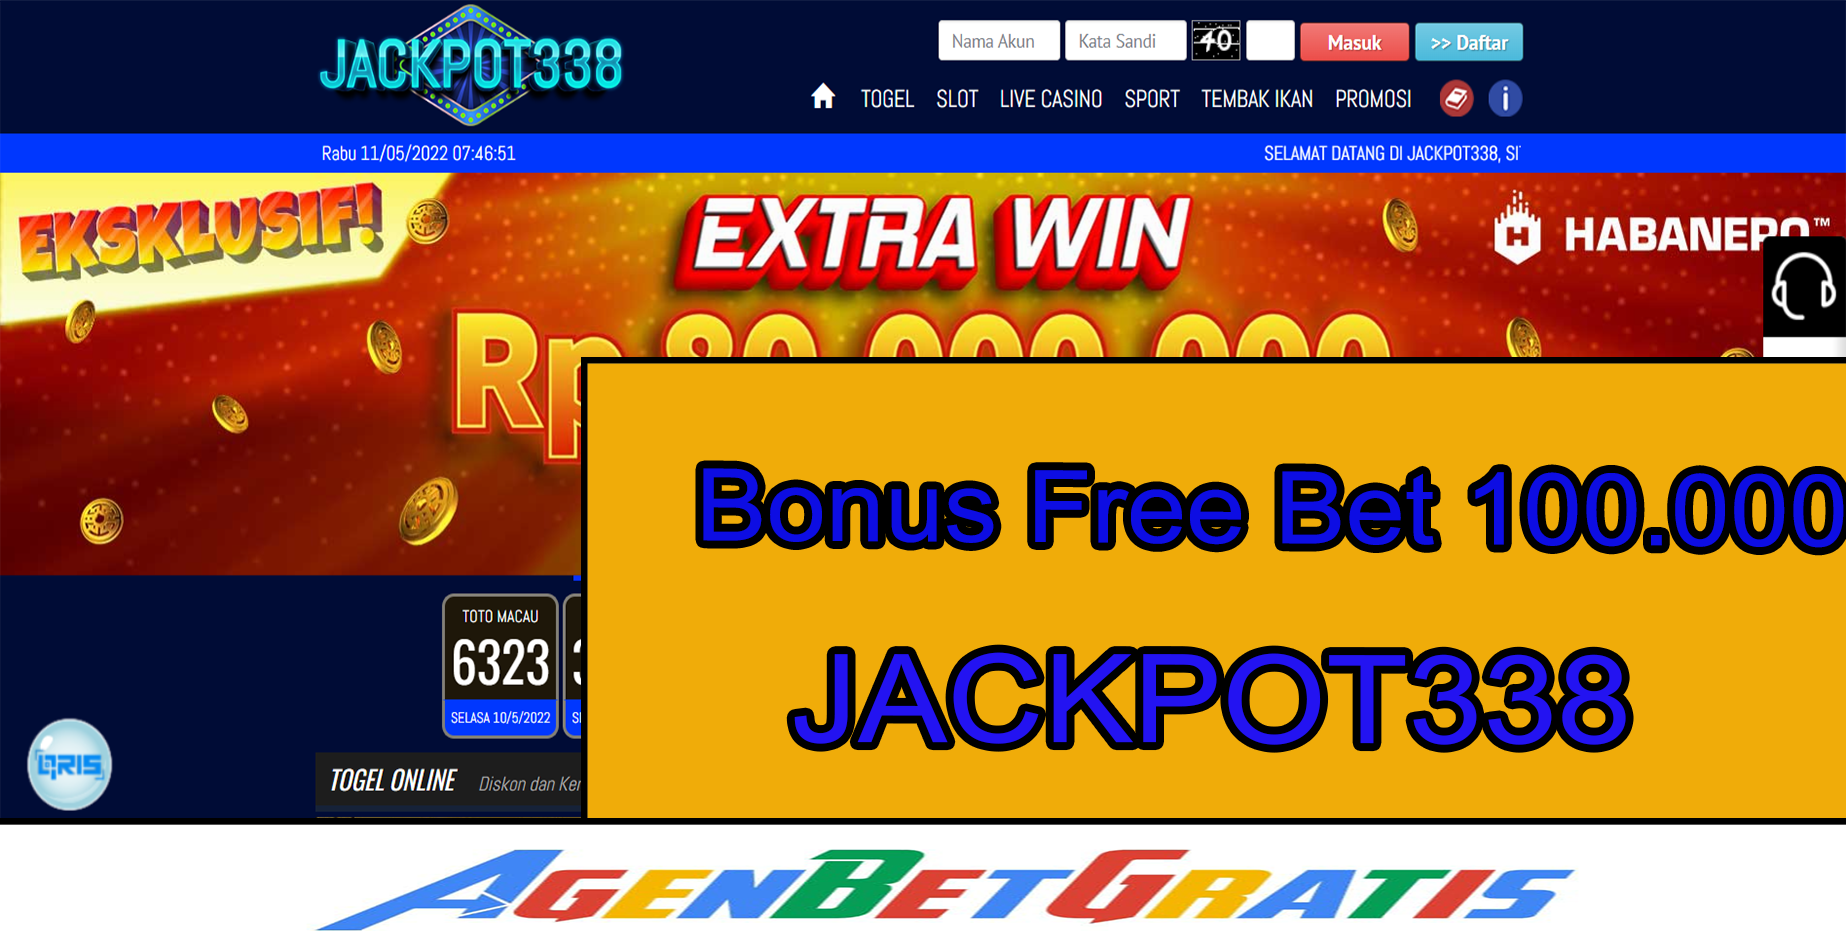 JACKPOT338 - Bonus FreeBet 10.000